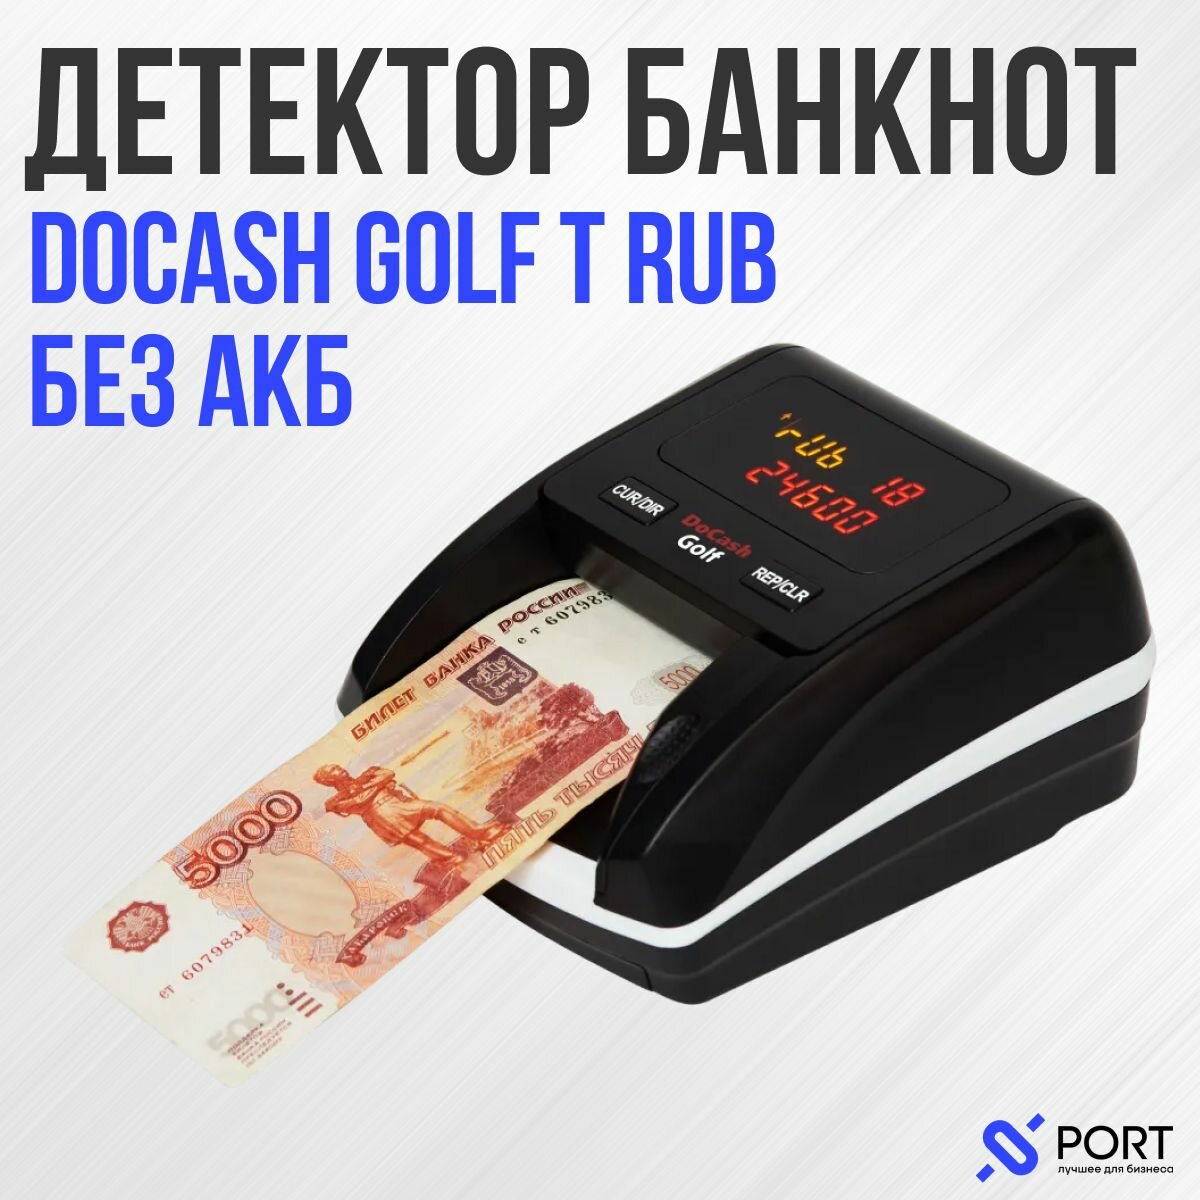 Автоматический детектор DoCash Golf RUB, без акб